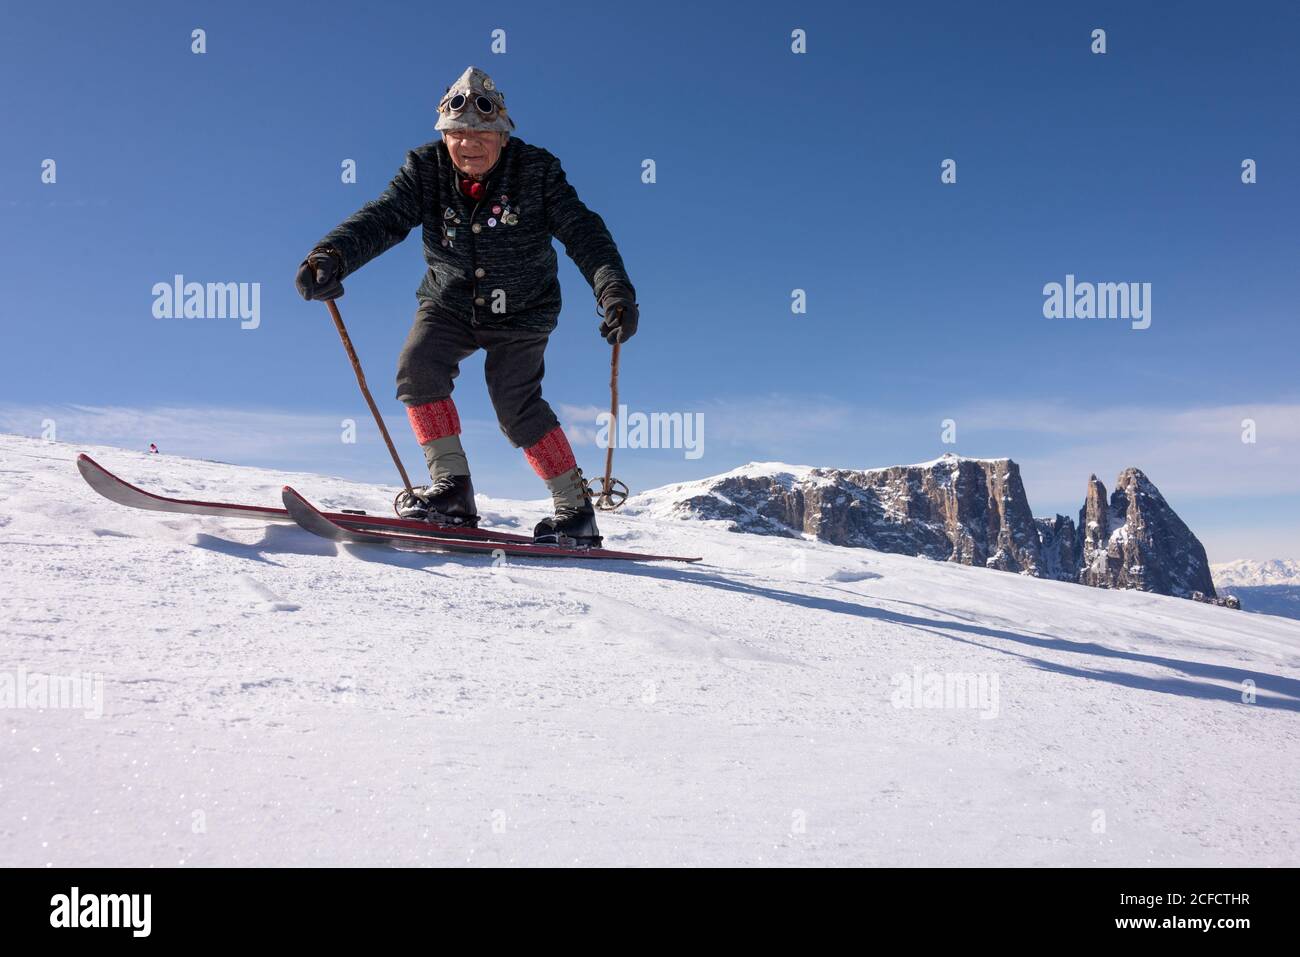 Italia, Alto Adige, Trentino Alto Adige, Dolomiti, Alpe di Siusi, Monte Seuc, zona dello Sciliar, sciatore di nostalgia otto Mauroner Foto Stock